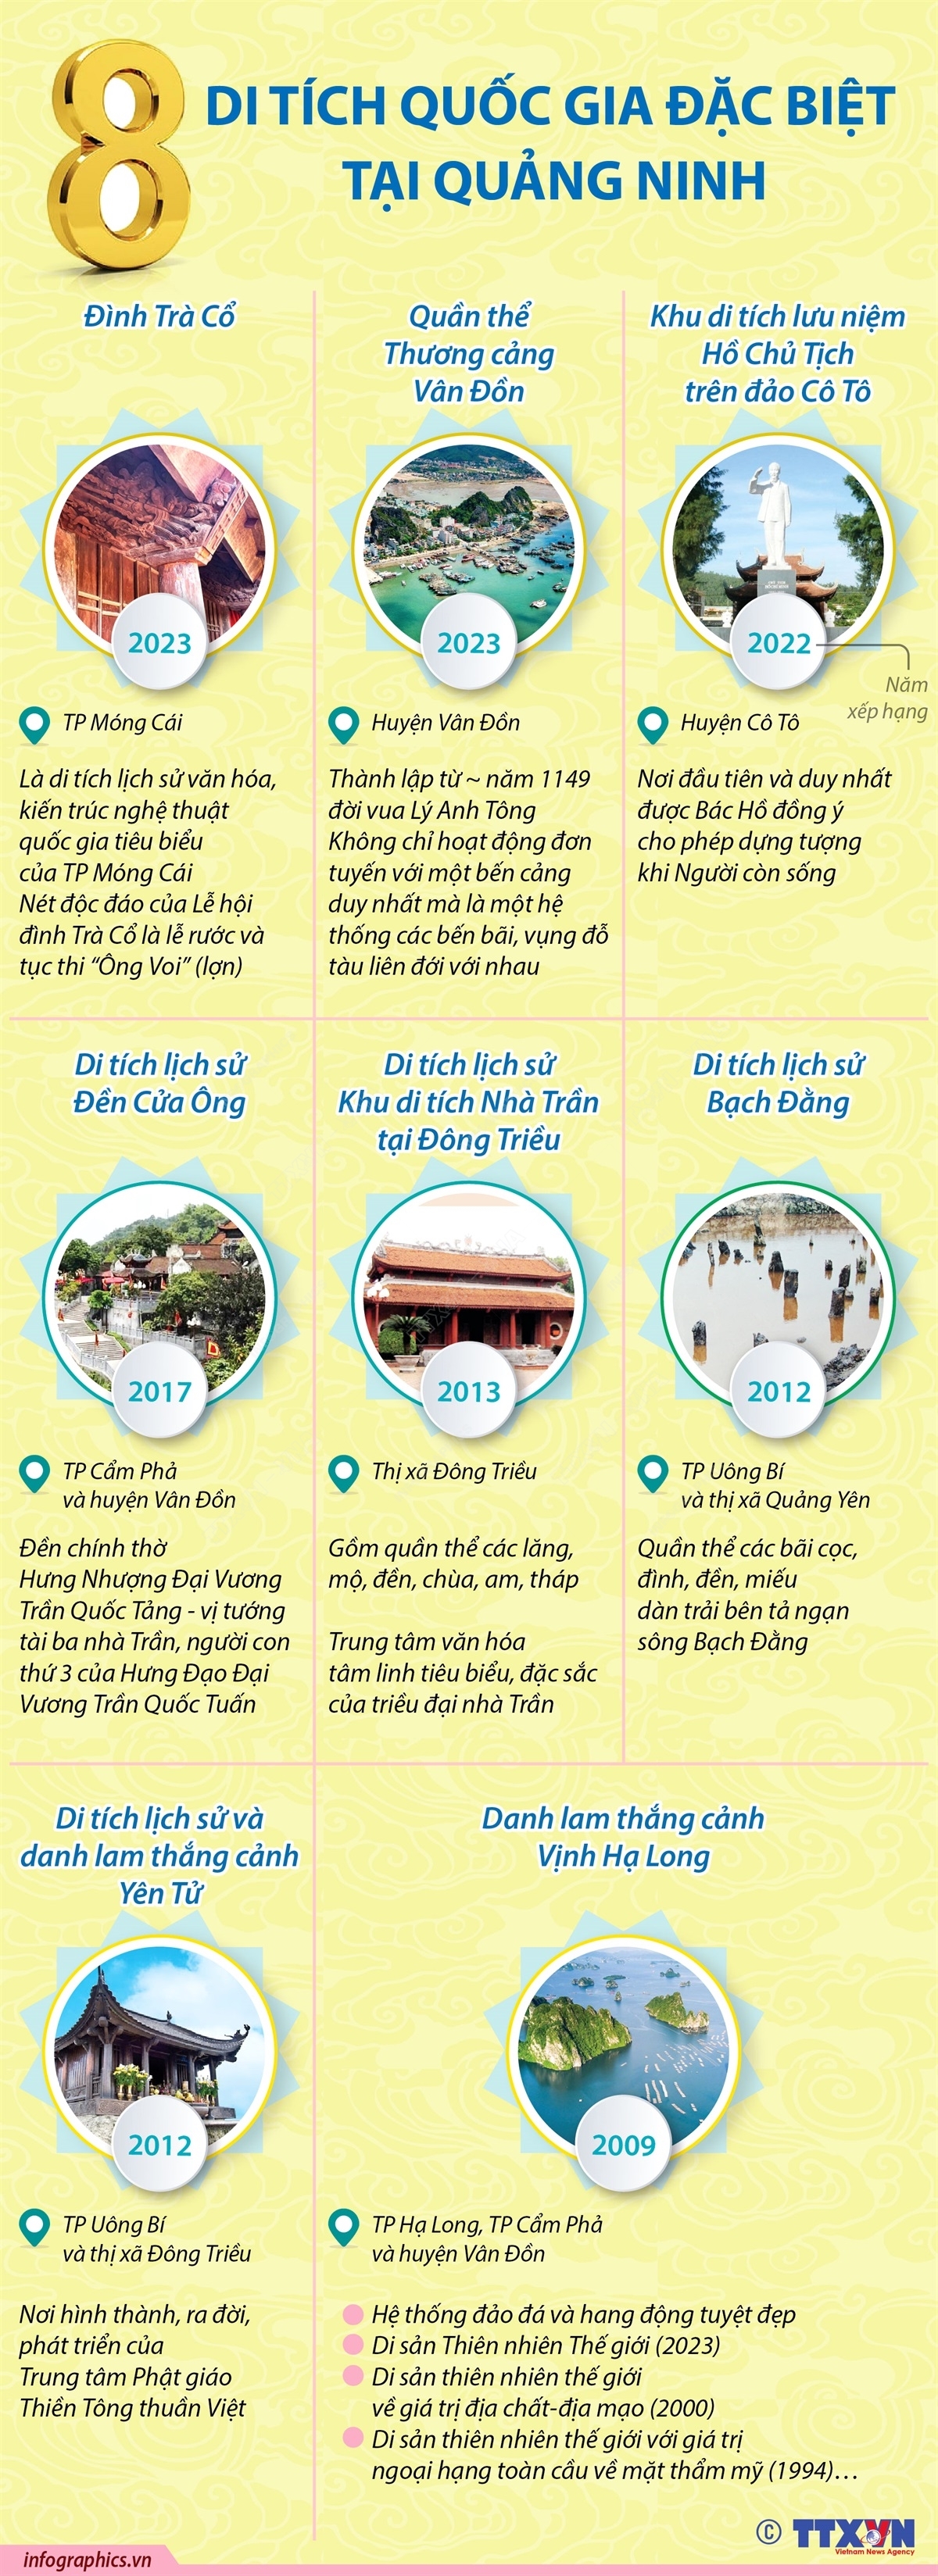 Tám Di tích Quốc gia Đặc biệt của tỉnh Quảng Ninh